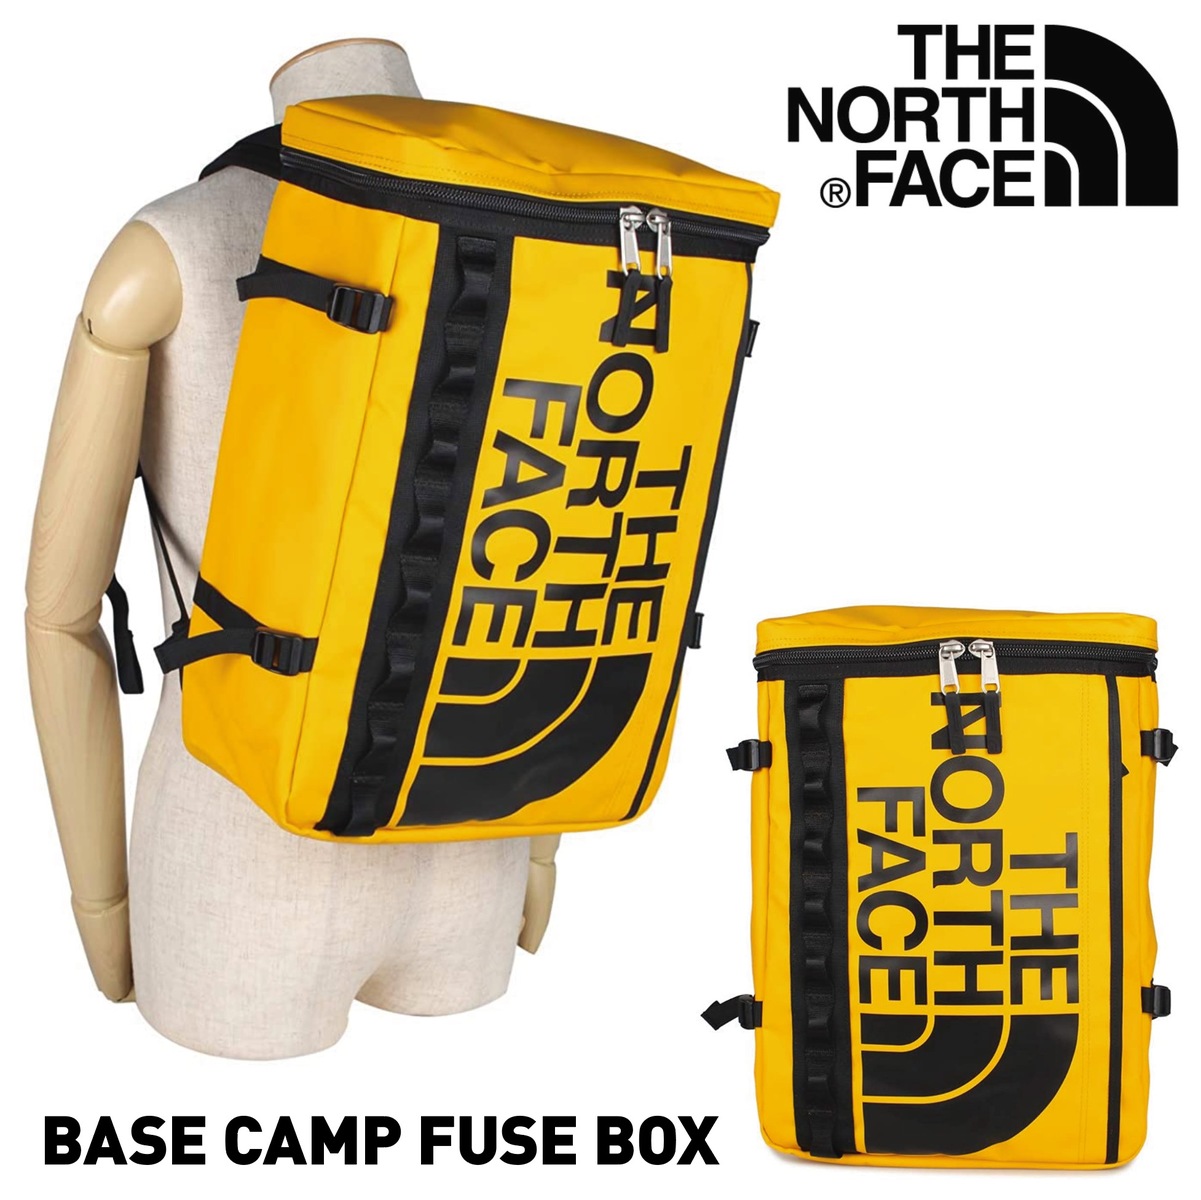 初回限定 The North Face Nf0a3kvr 70m ベースキャンプヒューズボックス 大容量 30l Base Camp Fuse Box ヒューズボックス バッグ リュック バックパック キャンプ 登山 イエロー ノースフェイス 10 売れ筋 Teutonia Nuernberg De